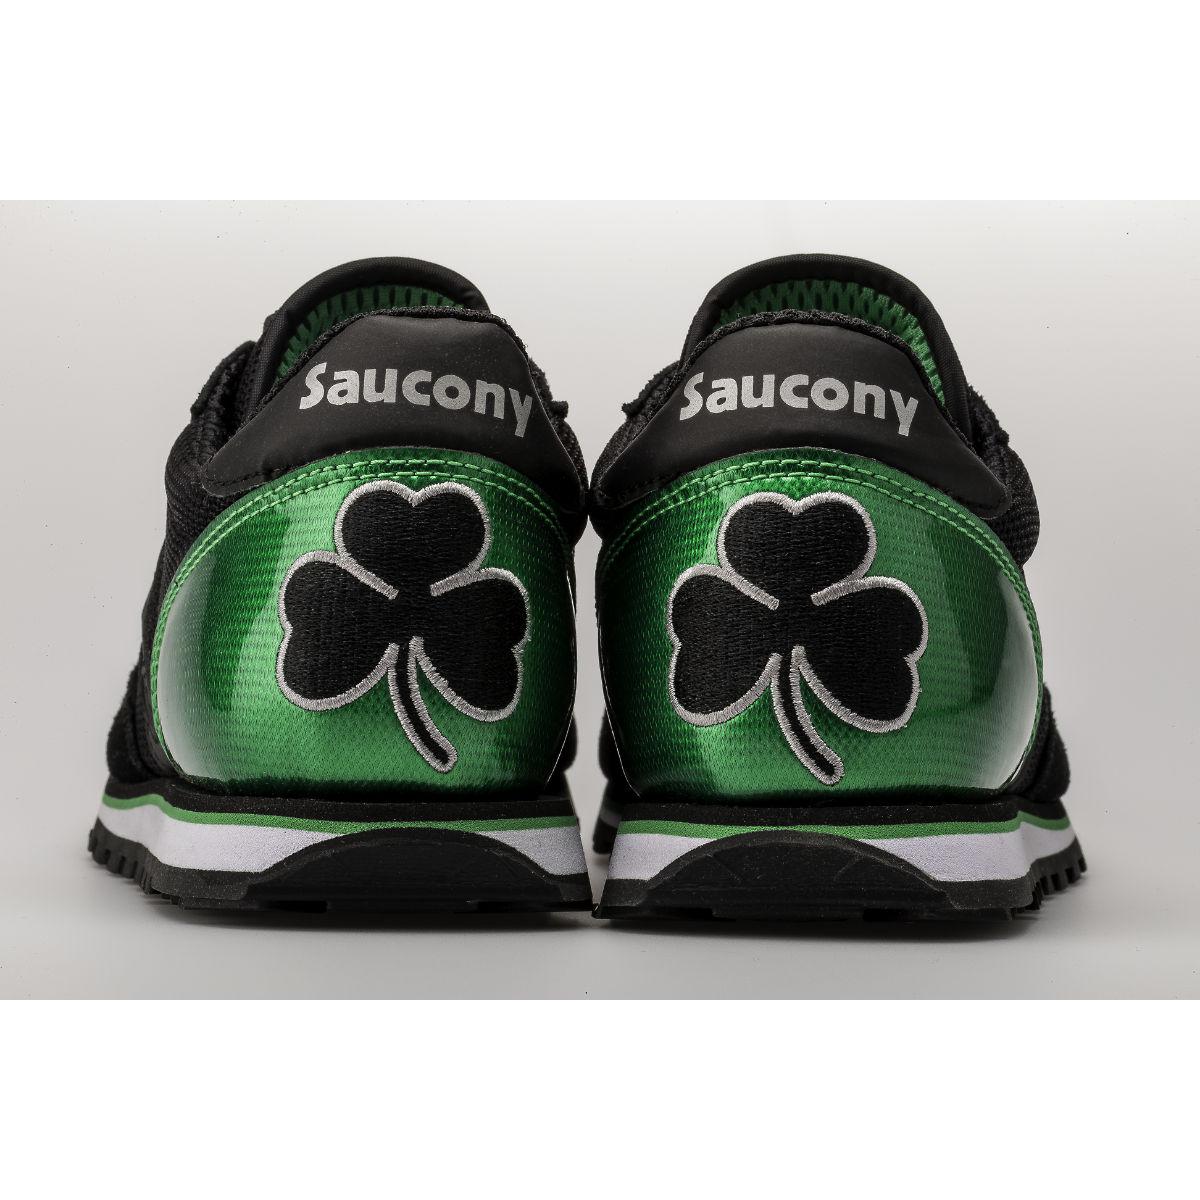 saucony shamrock shoes